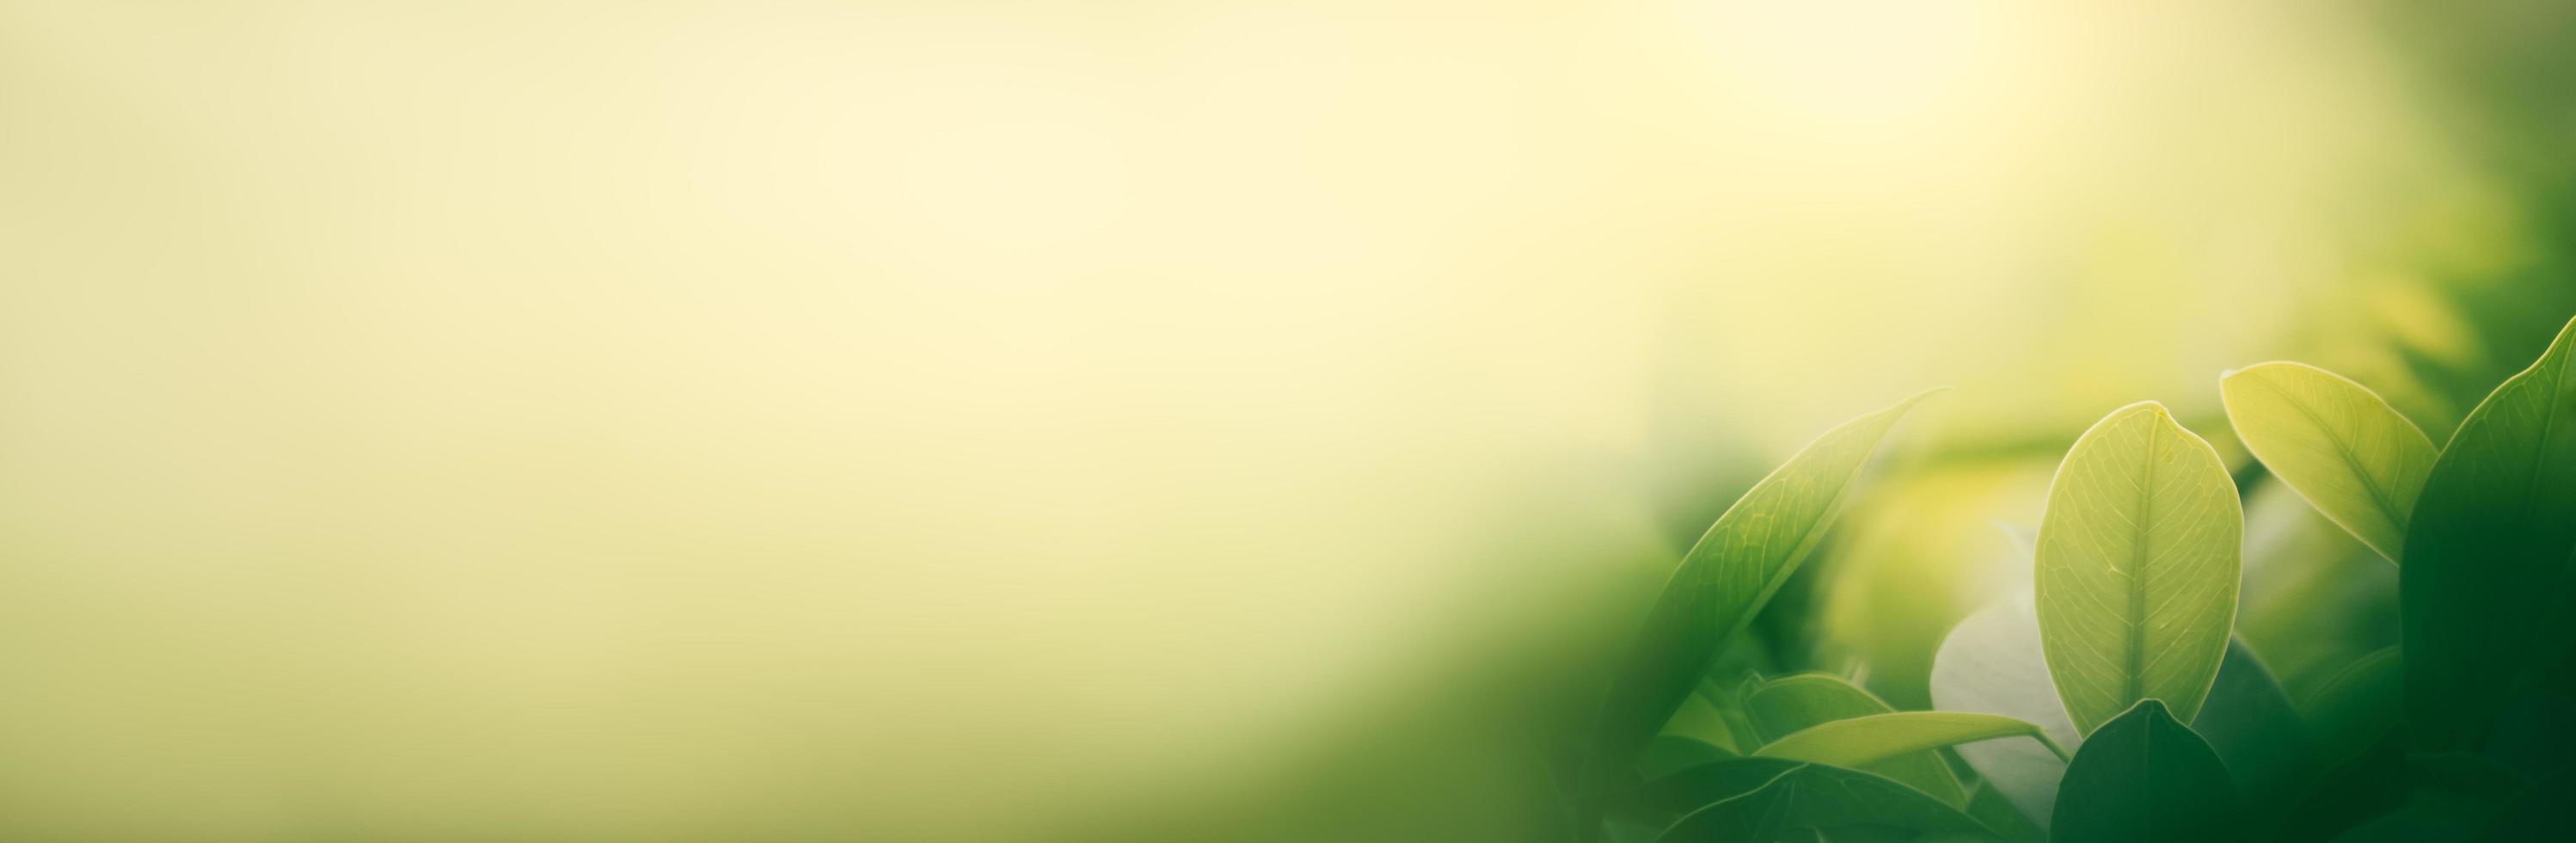 nature de la feuille verte dans le jardin en été. feuilles vertes naturelles plantes utilisant comme page de couverture de fond de printemps verdure environnement écologie vert citron papier peint photo